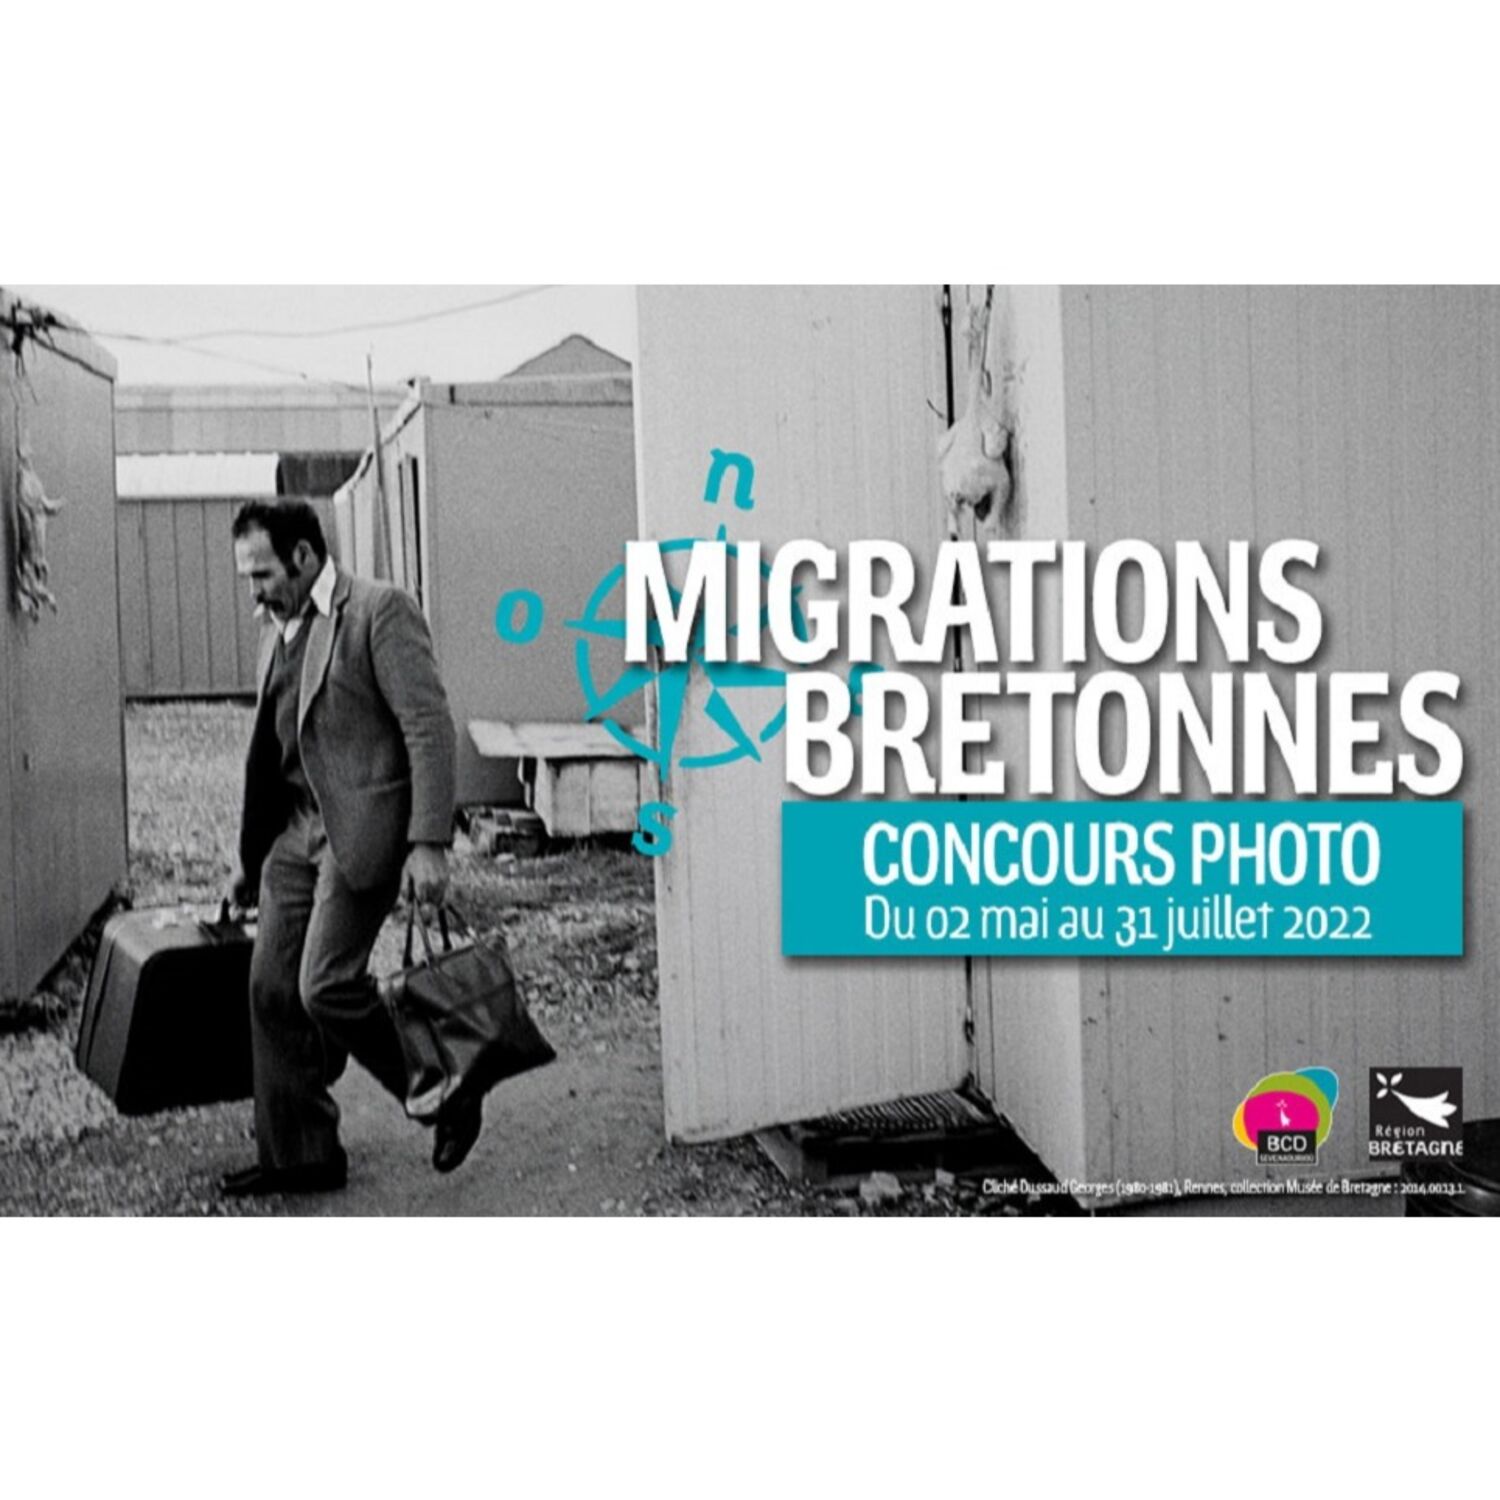 Bretagne Culture Diversité lance un concours photo sur les migrations Bretonnes